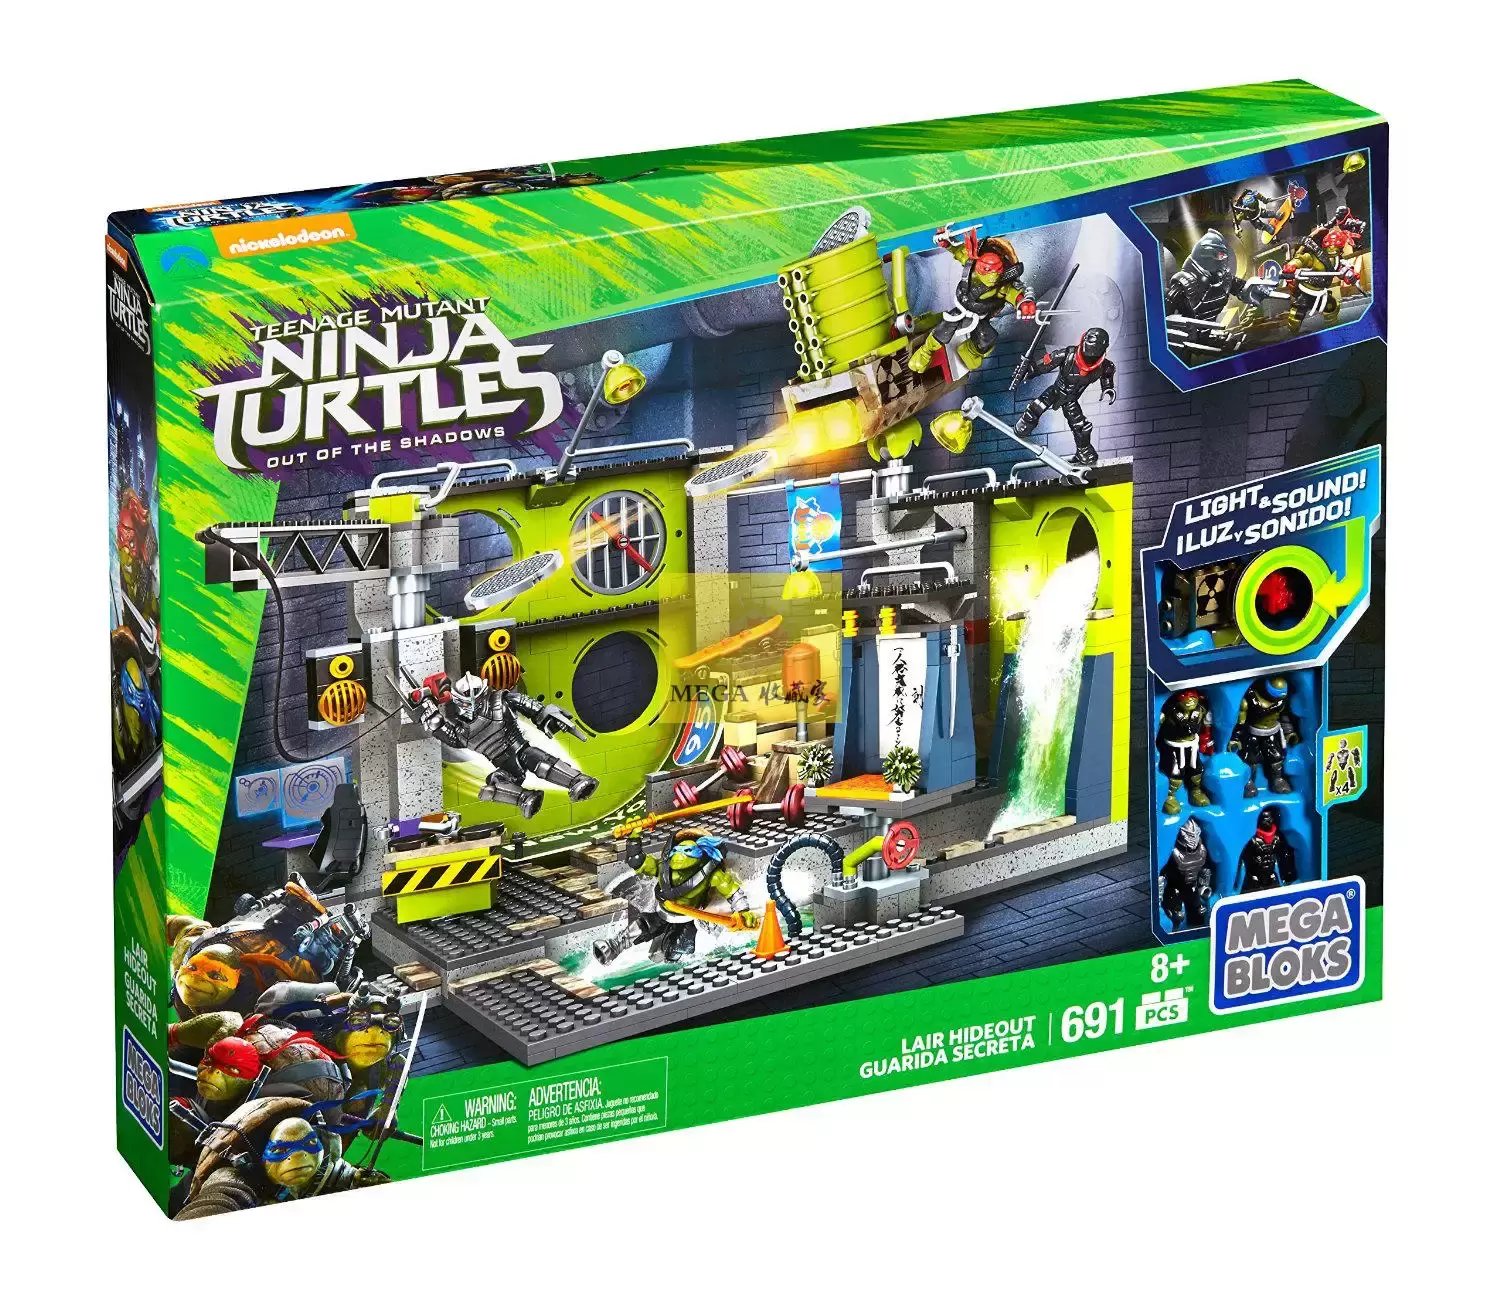 Teenage Mutant Ninja Turtles Mega Bloks - Lair Hideout